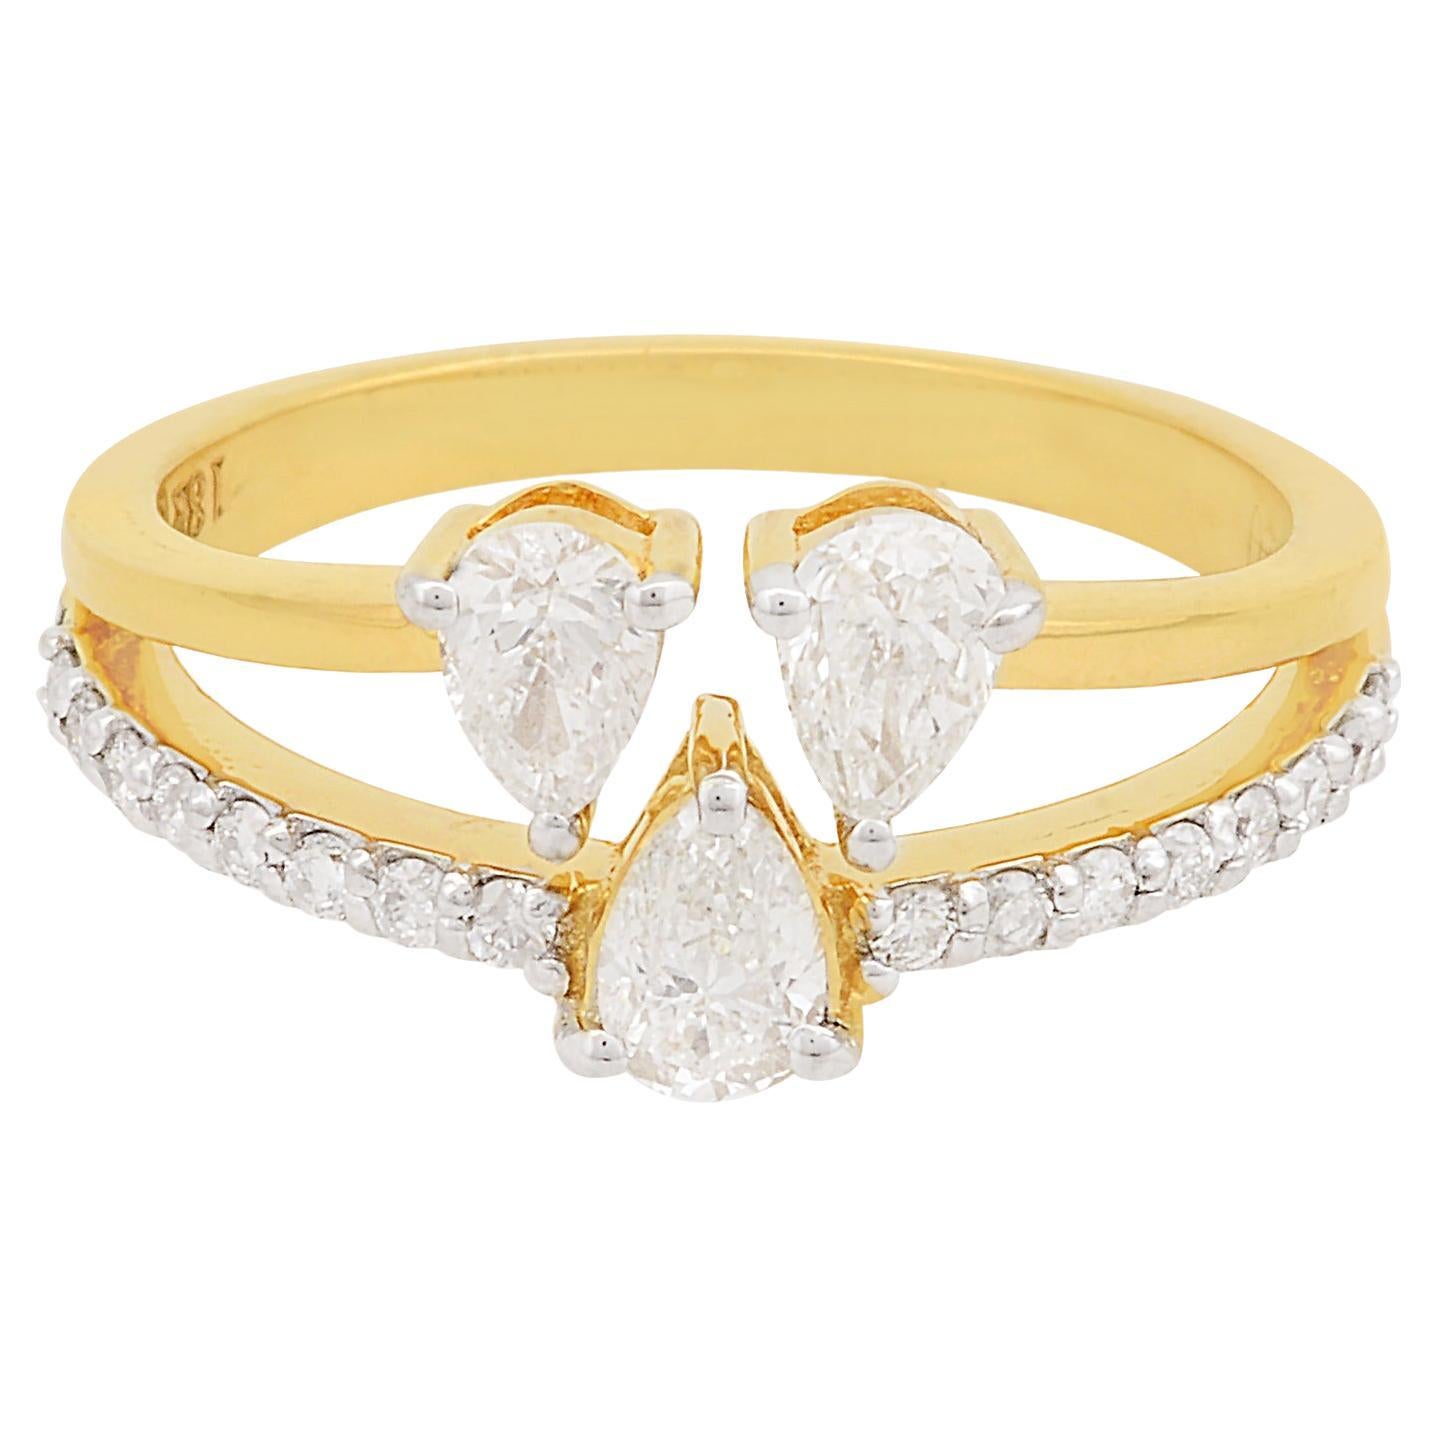 Solid 18 Karat Yellow Gold Pear Round Diamond Ring Anniversary Handmade Jewelry